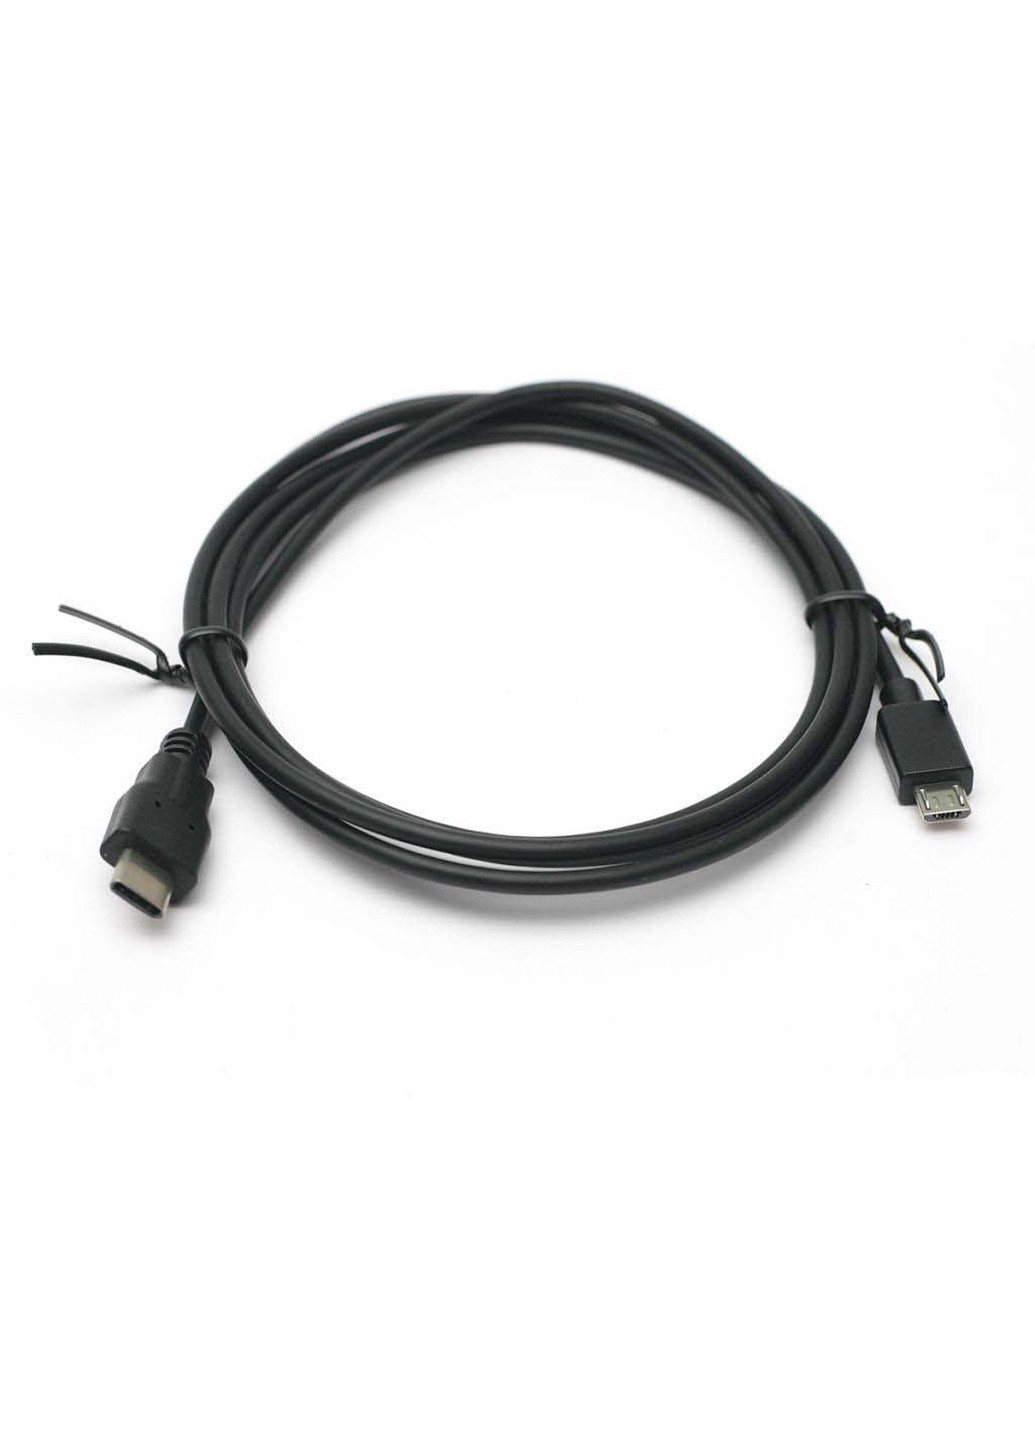 Дата кабель USB 3.0 Type C - micro USB 1.5м (KD00AS1258) PowerPlant usb 3.0 type c – micro usb 1.5м (239382797)